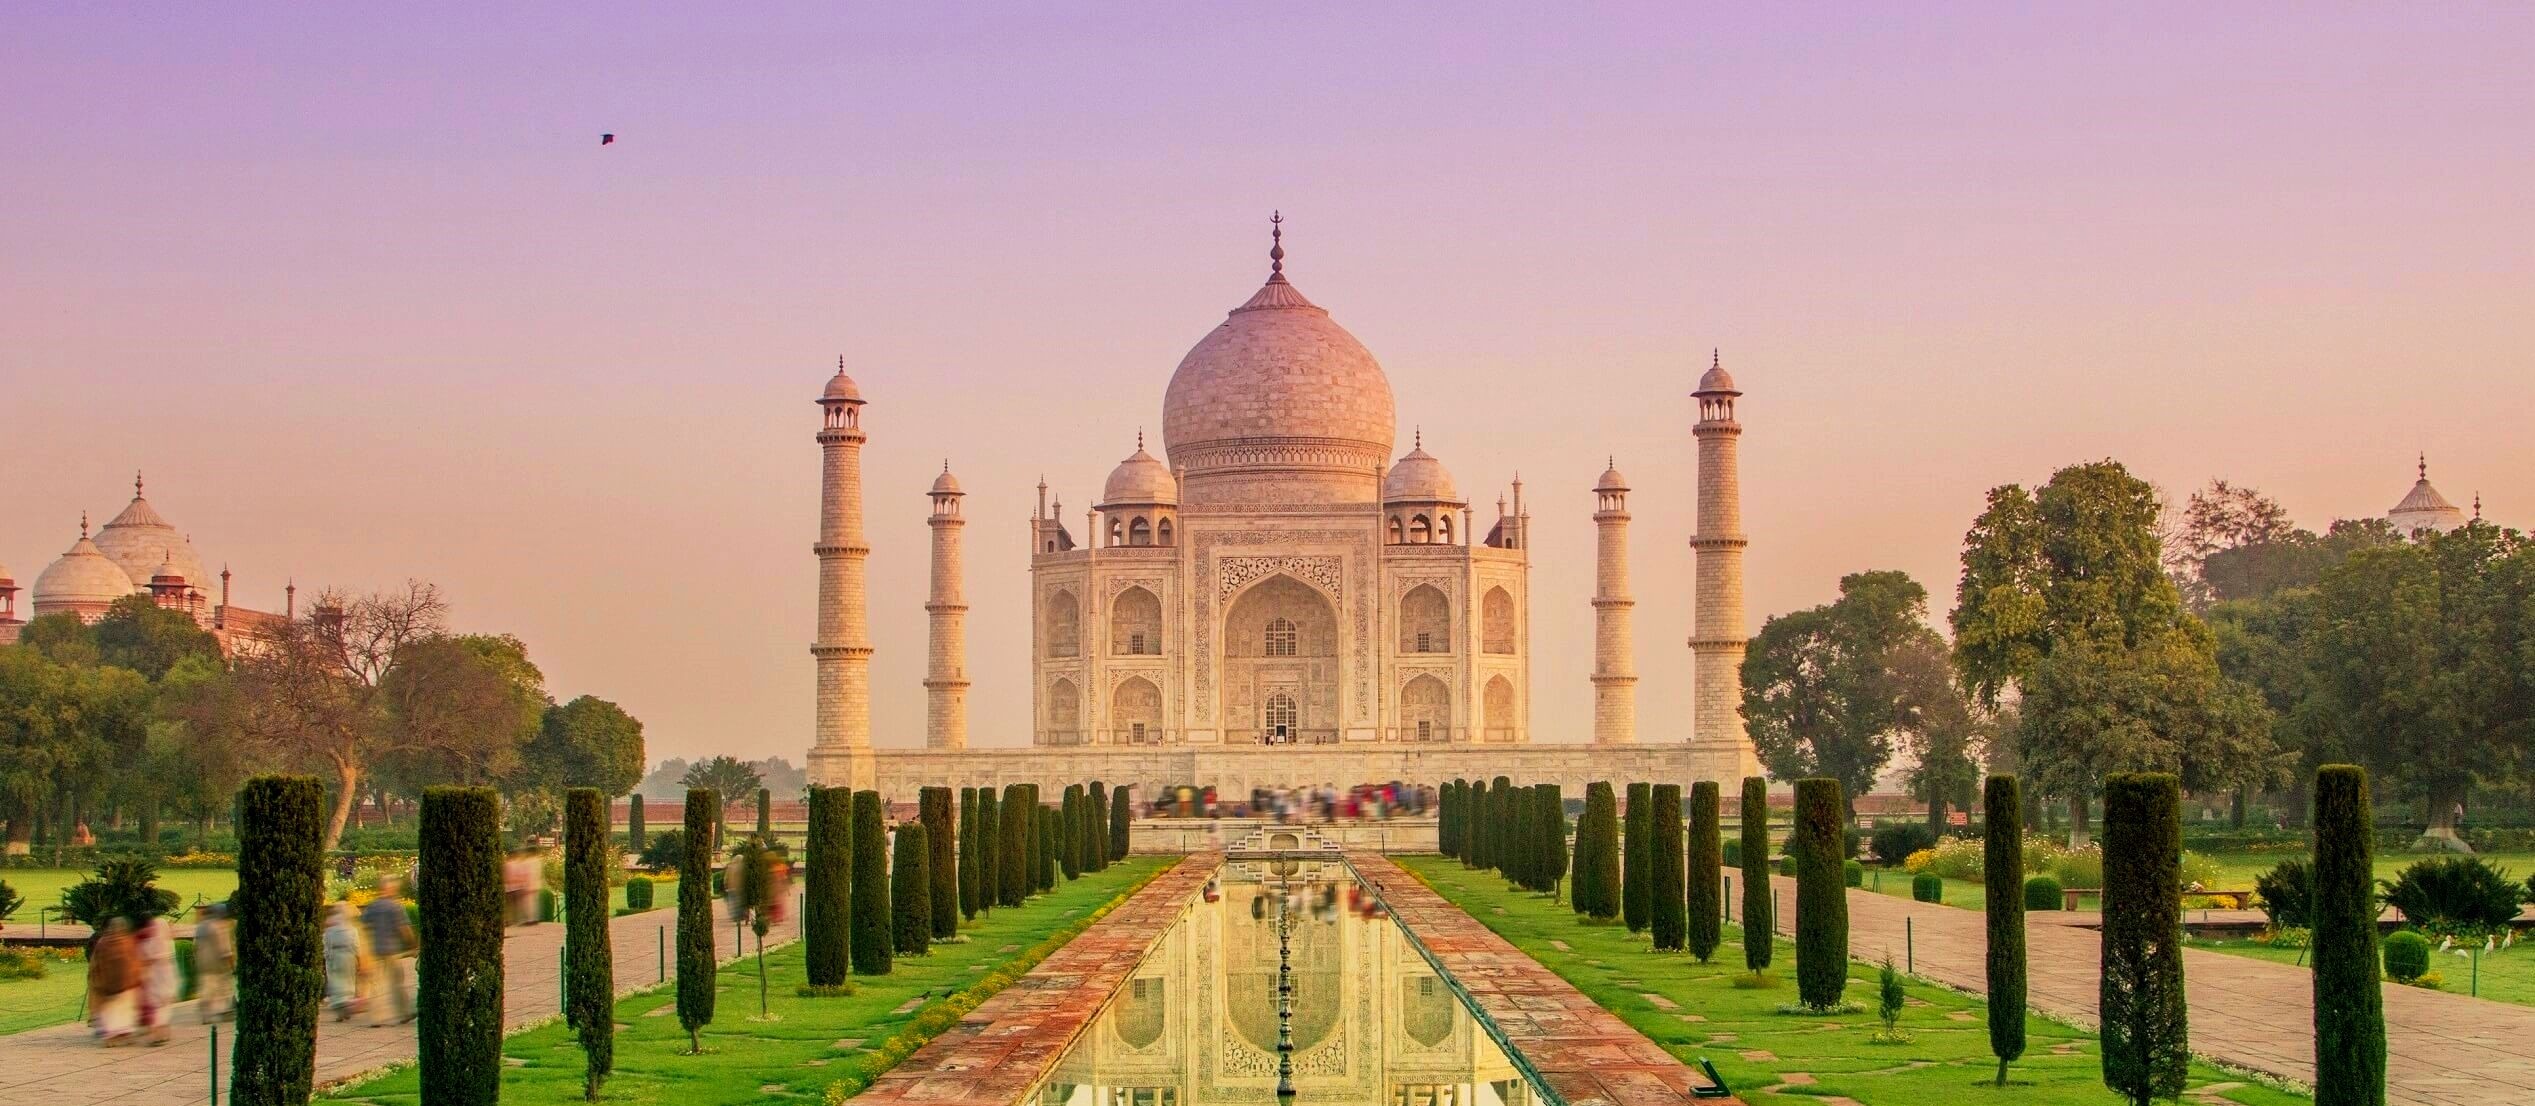 Taj Mahal in Indien - vom Verfall bedroht? | Urlaubsguru